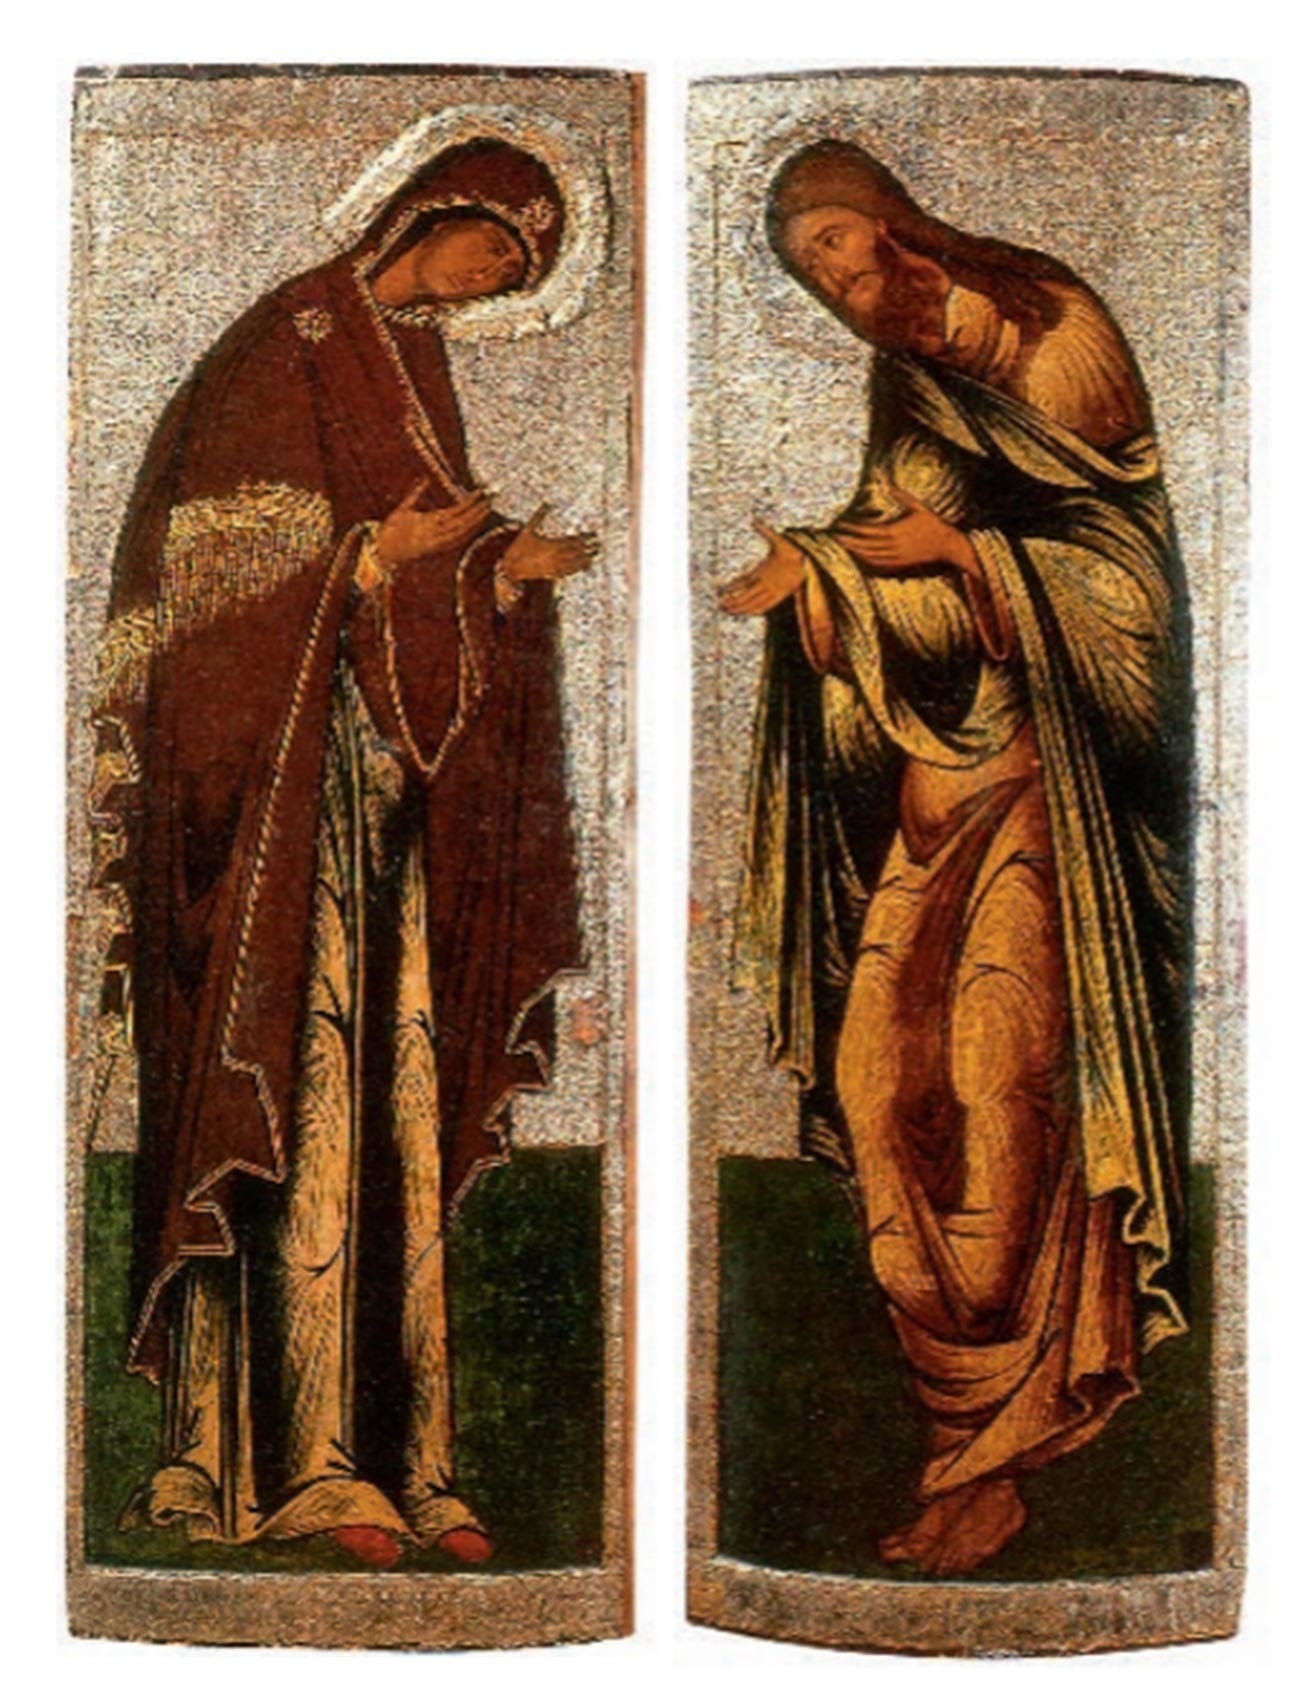 Иконы «Богоматерь» (слева) и «Иоанн Предтеча»